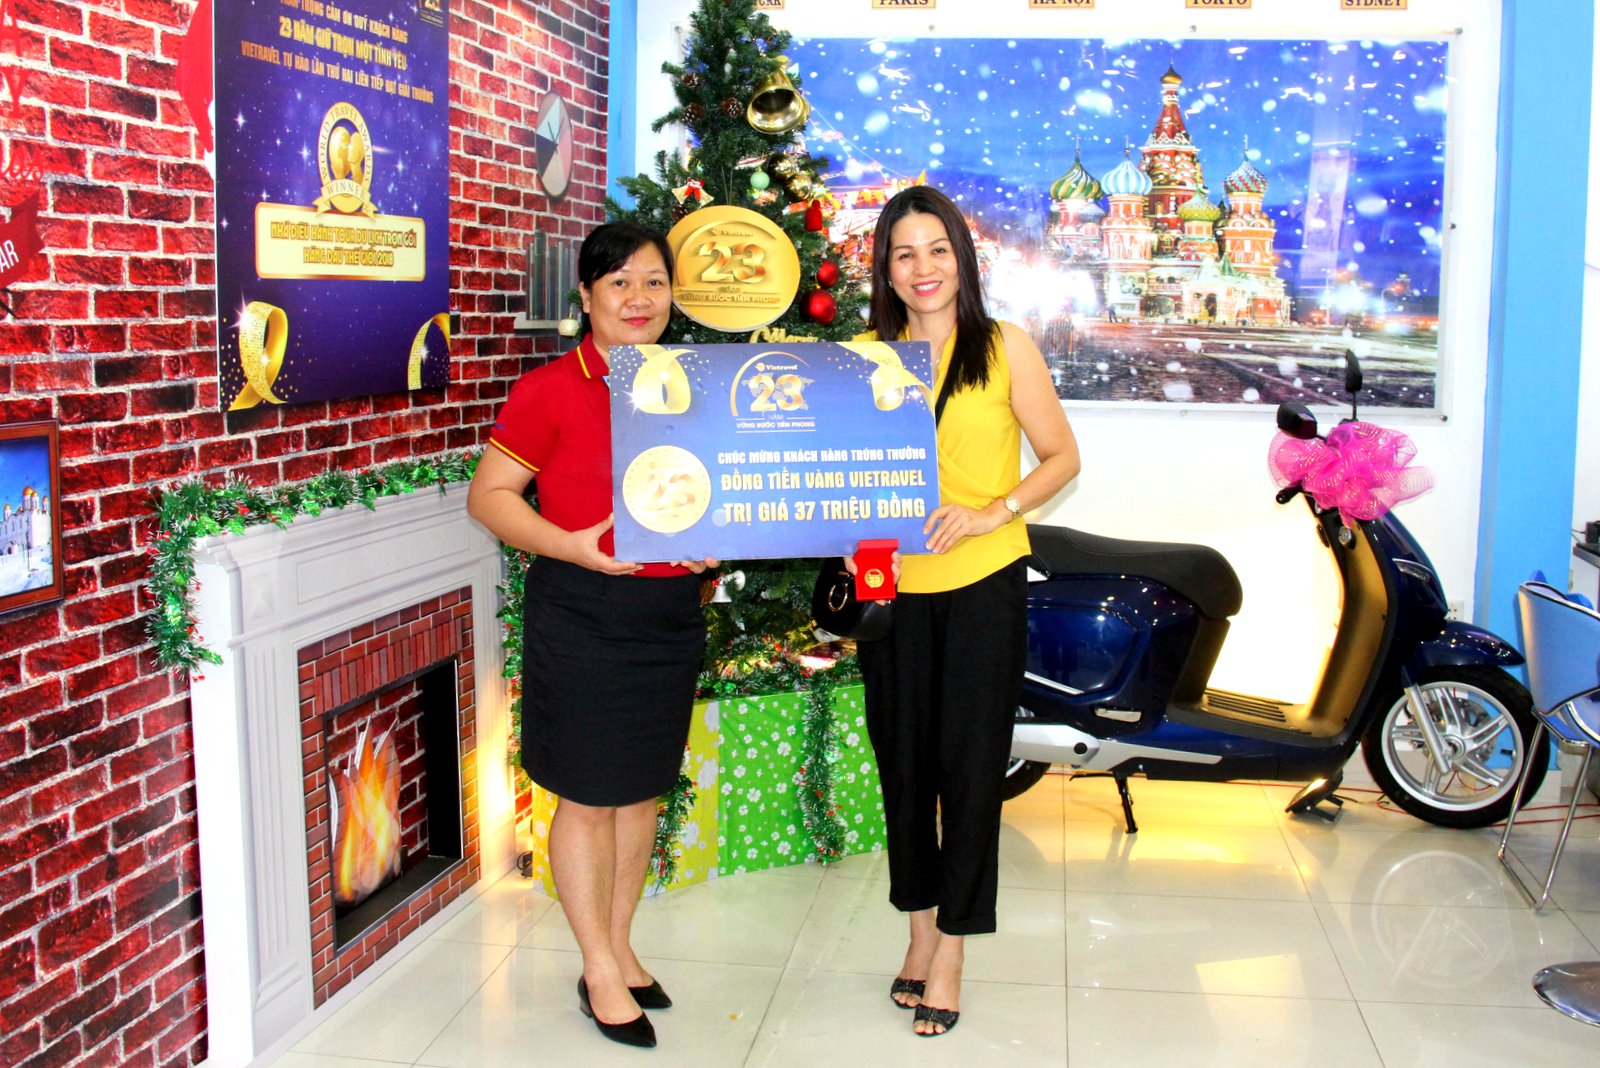 Lãnh đạo Vietravel chi nhánh Nha Trang trao Đồng tiền vàng Vietravel cho chị Nguyễn Thị Phi Yến